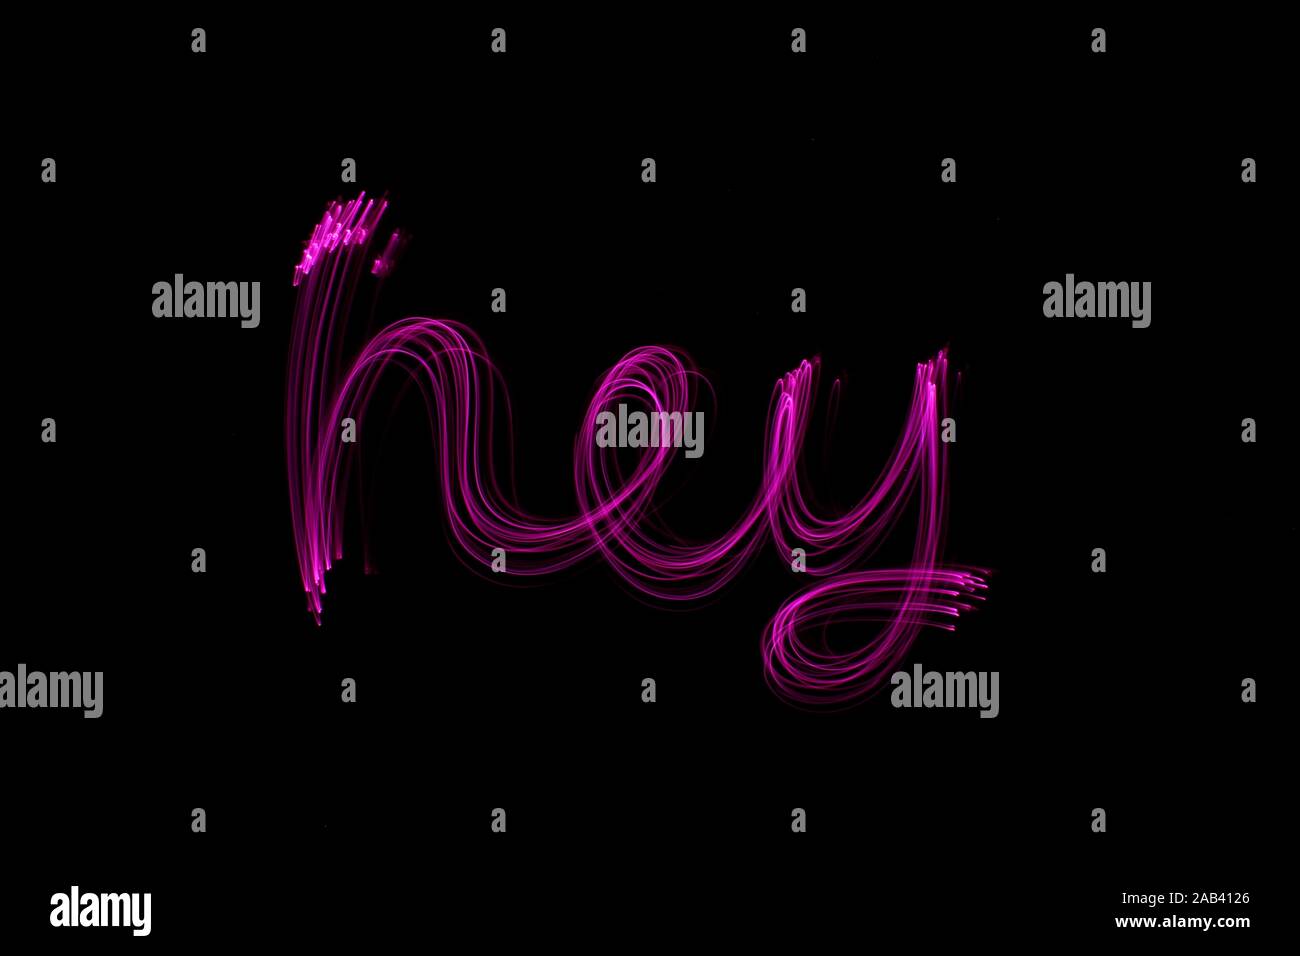 Une longue exposition photographie du mot 'hey' en couleur néon rose dans un abrégé swirl, motif de lignes parallèles sur un fond noir. Peinture de lumière Banque D'Images